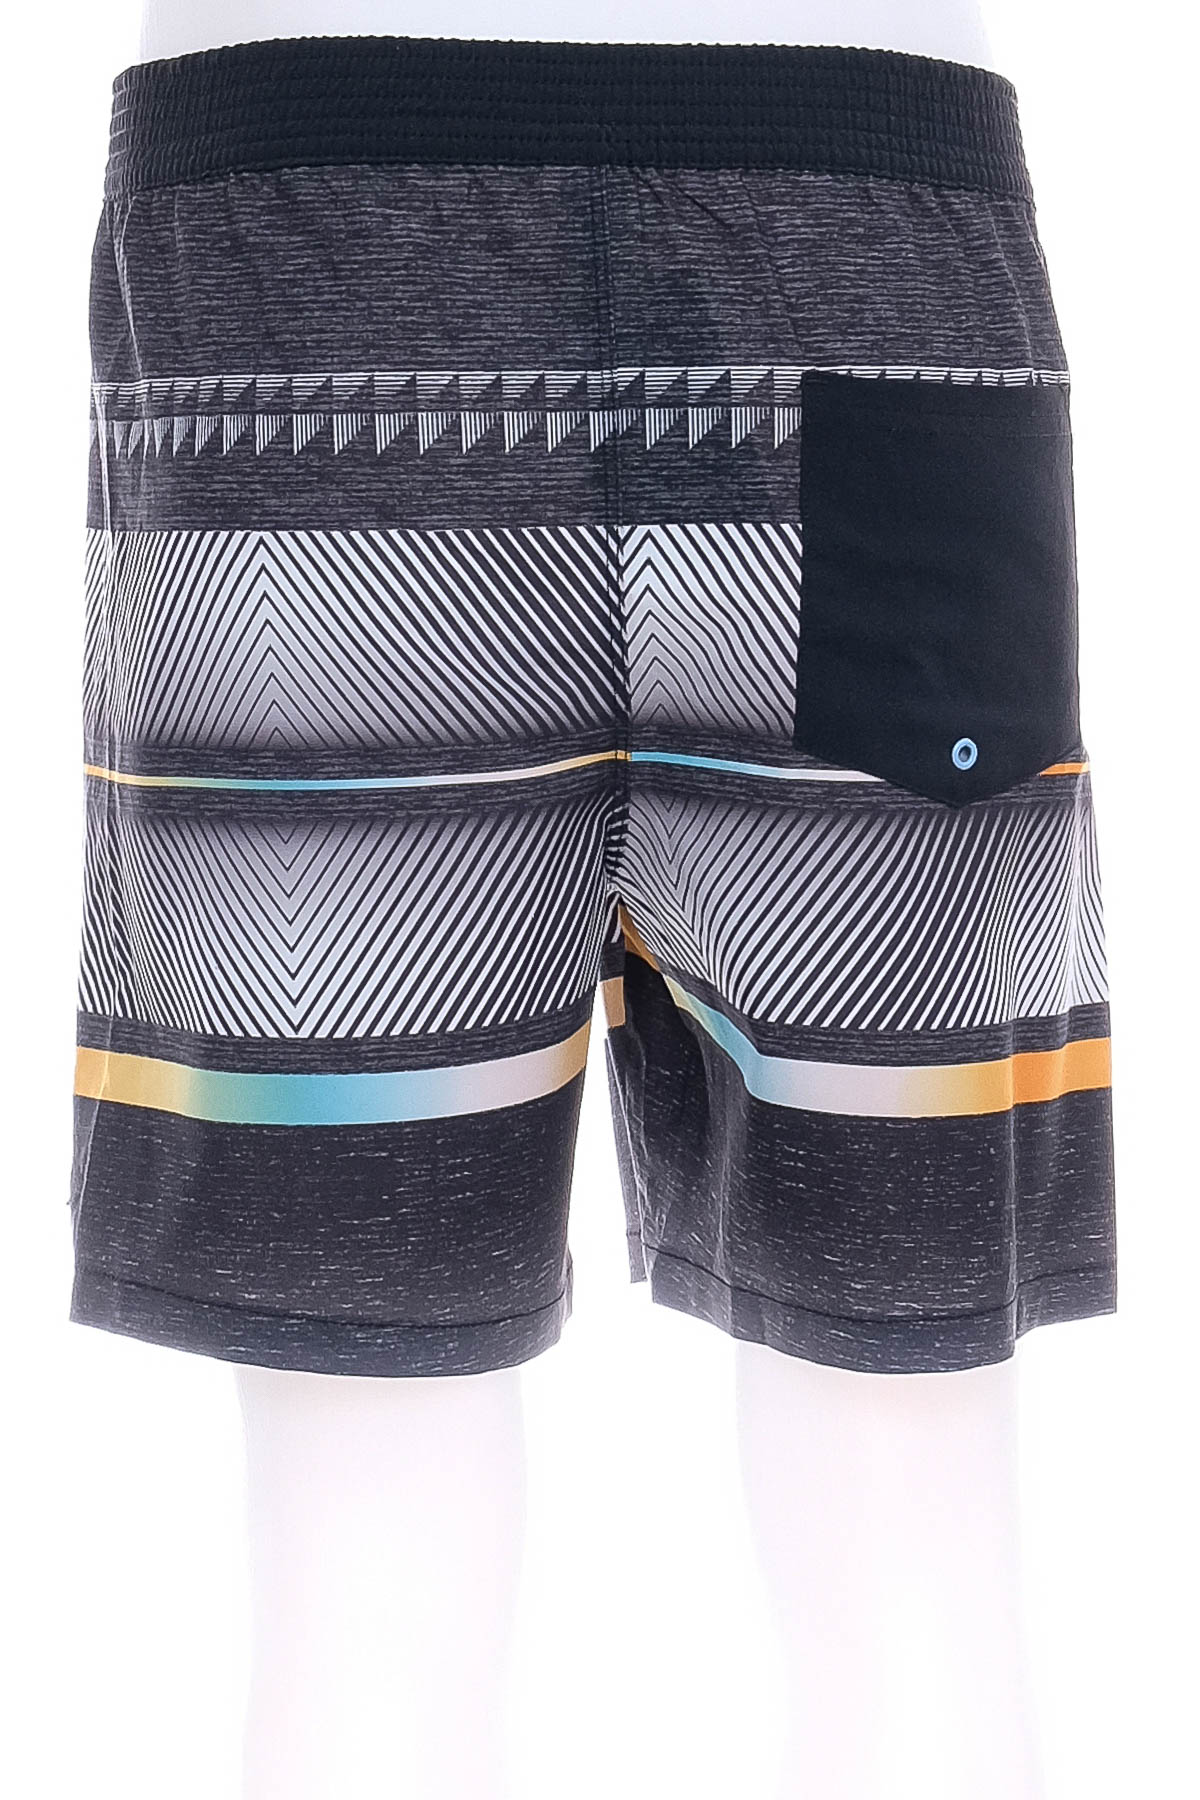 Men's shorts - Target - 1